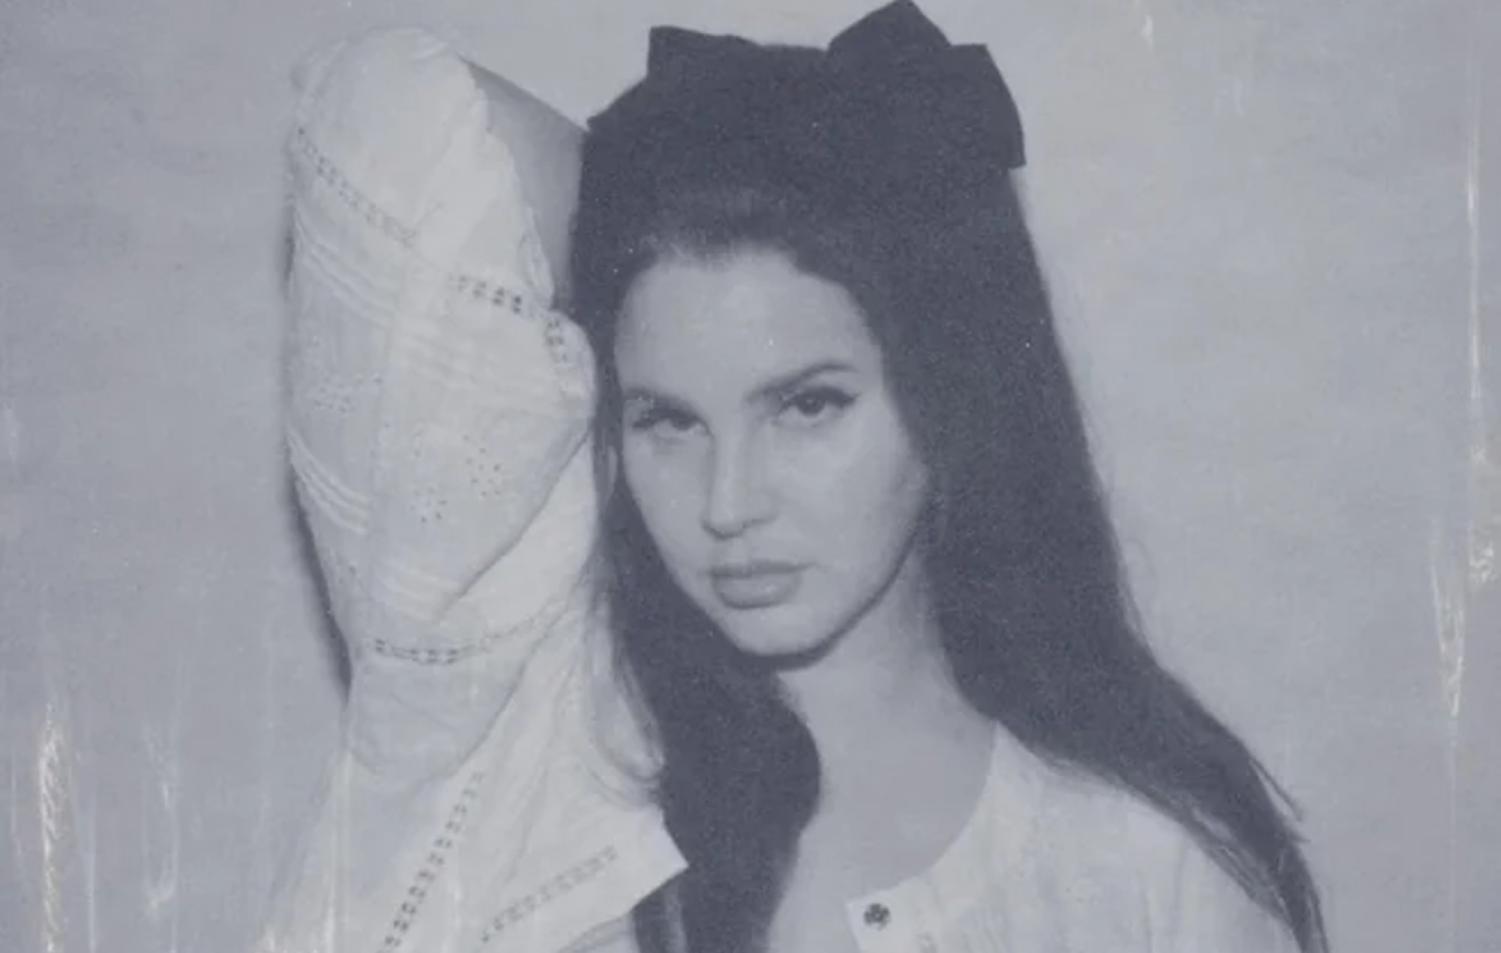 MARGARET (TRADUÇÃO) - Lana Del Rey 